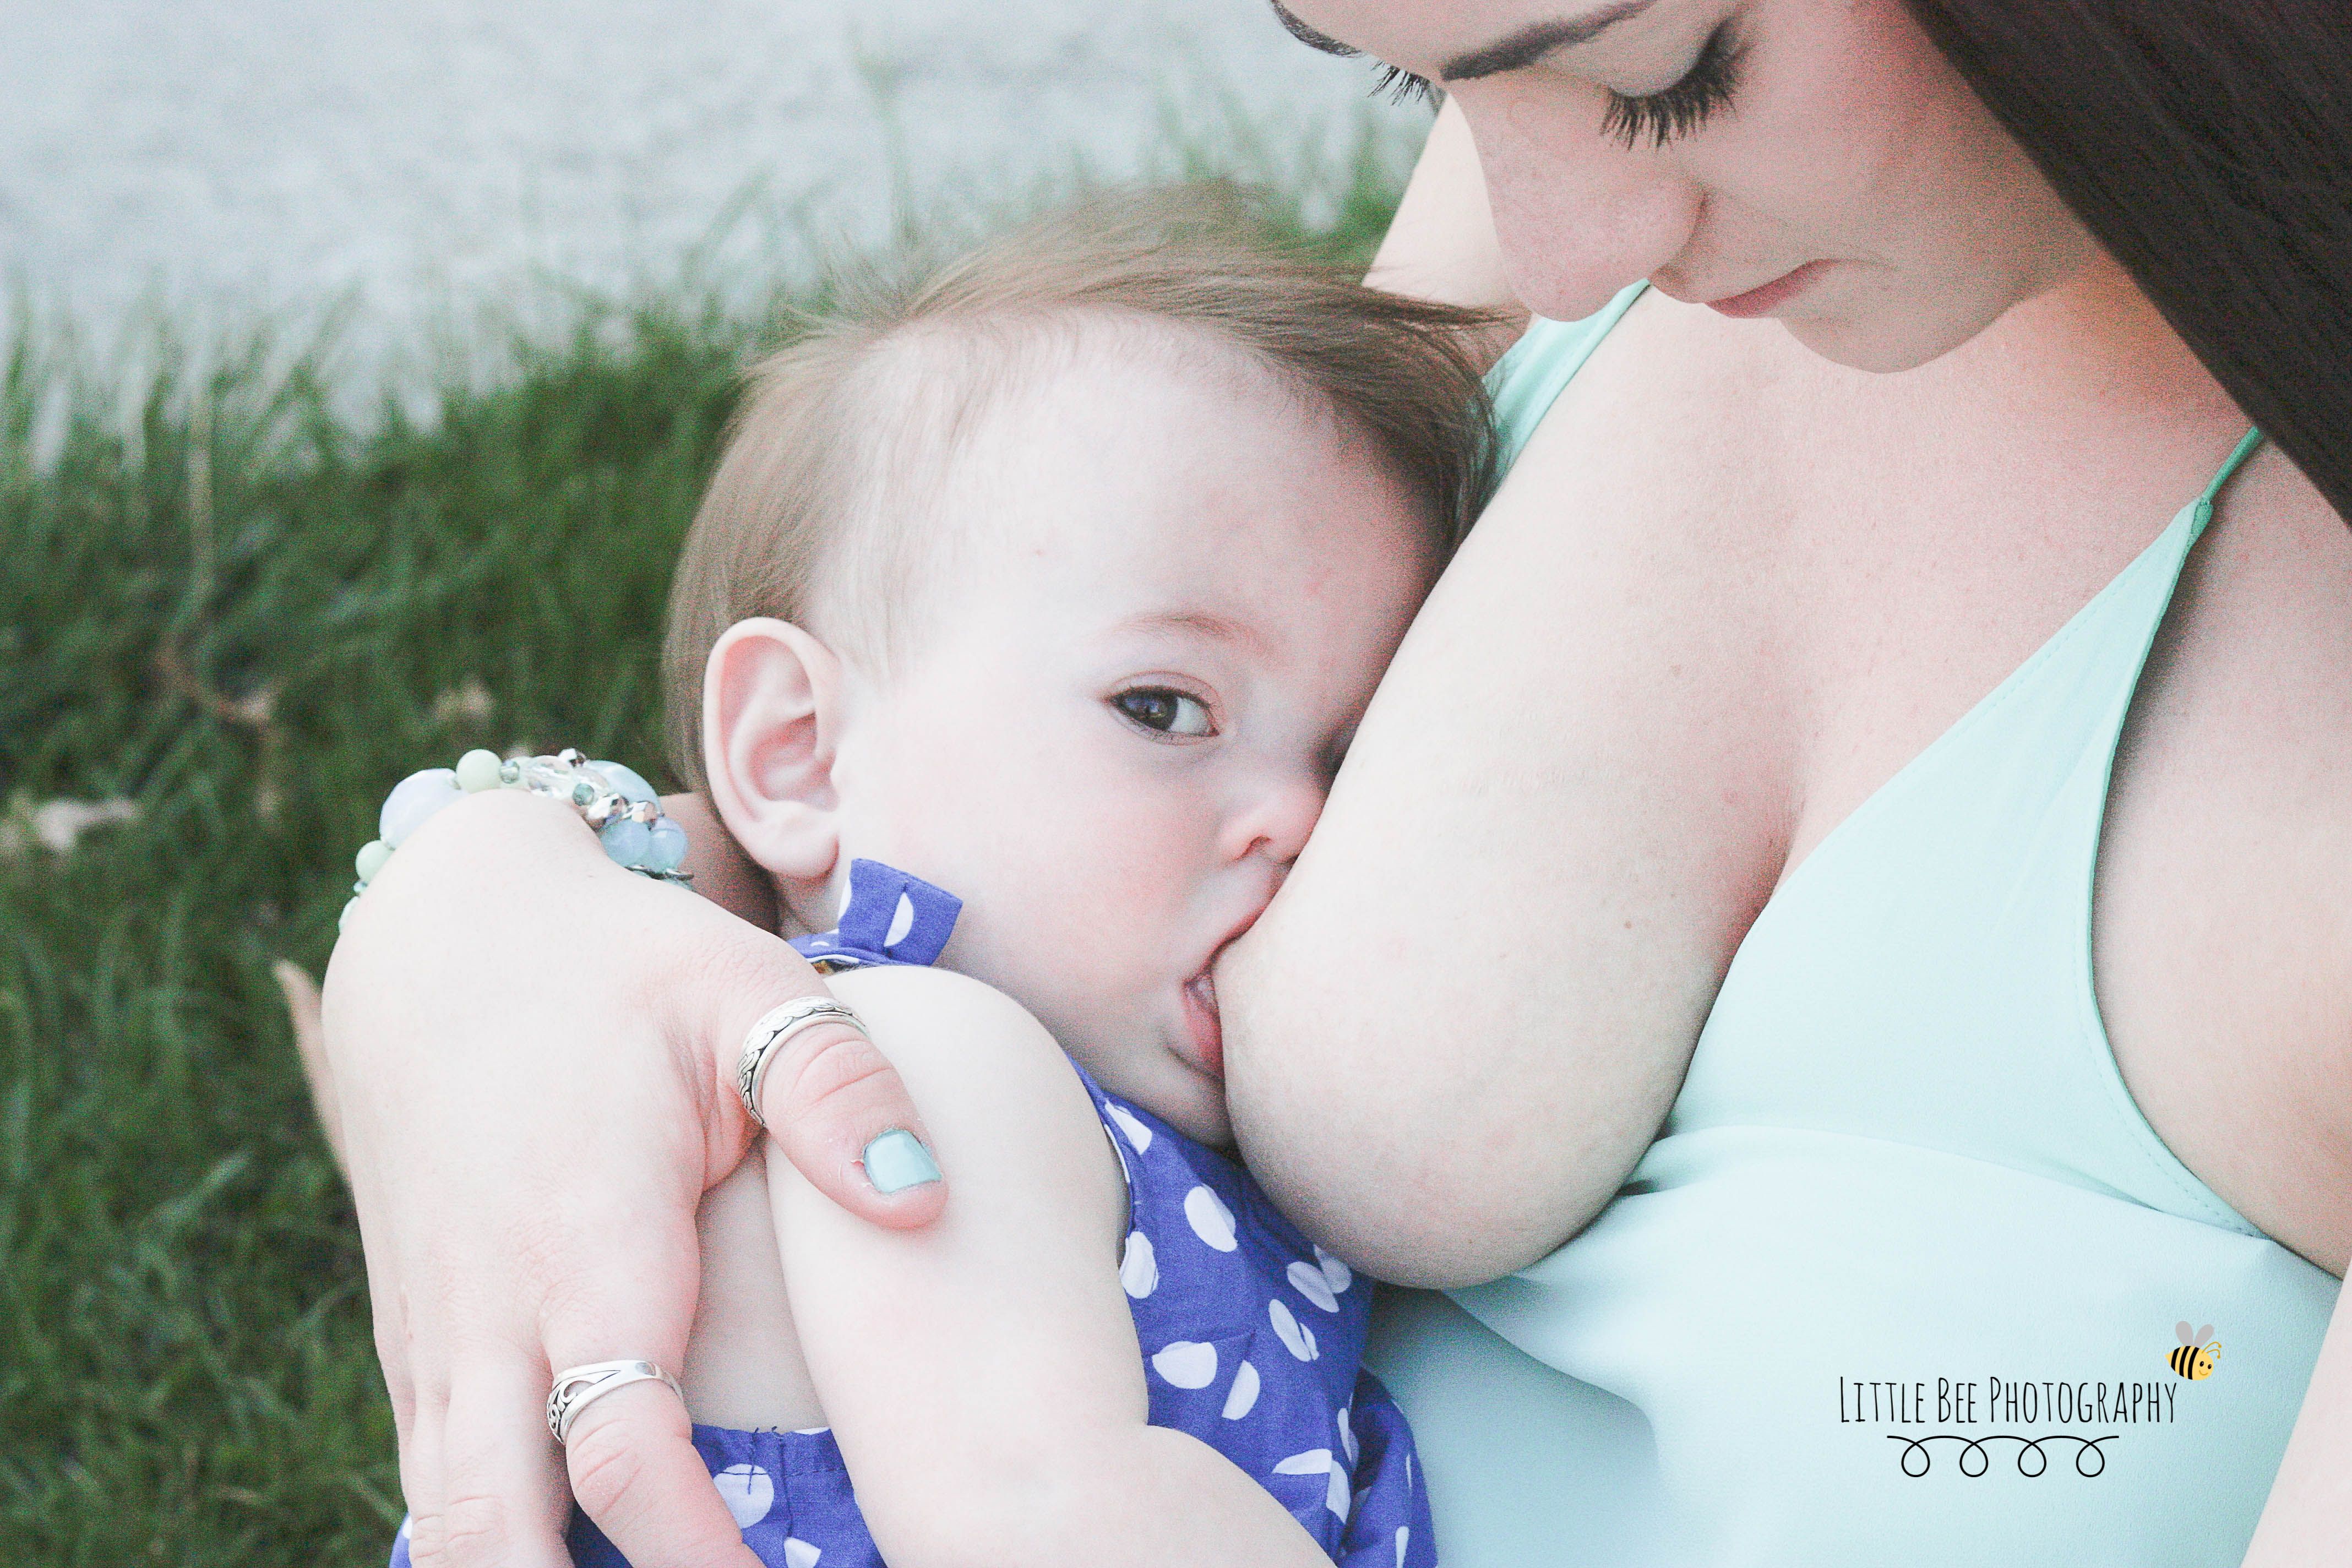 The E. Q. reccomend breastfeeding public